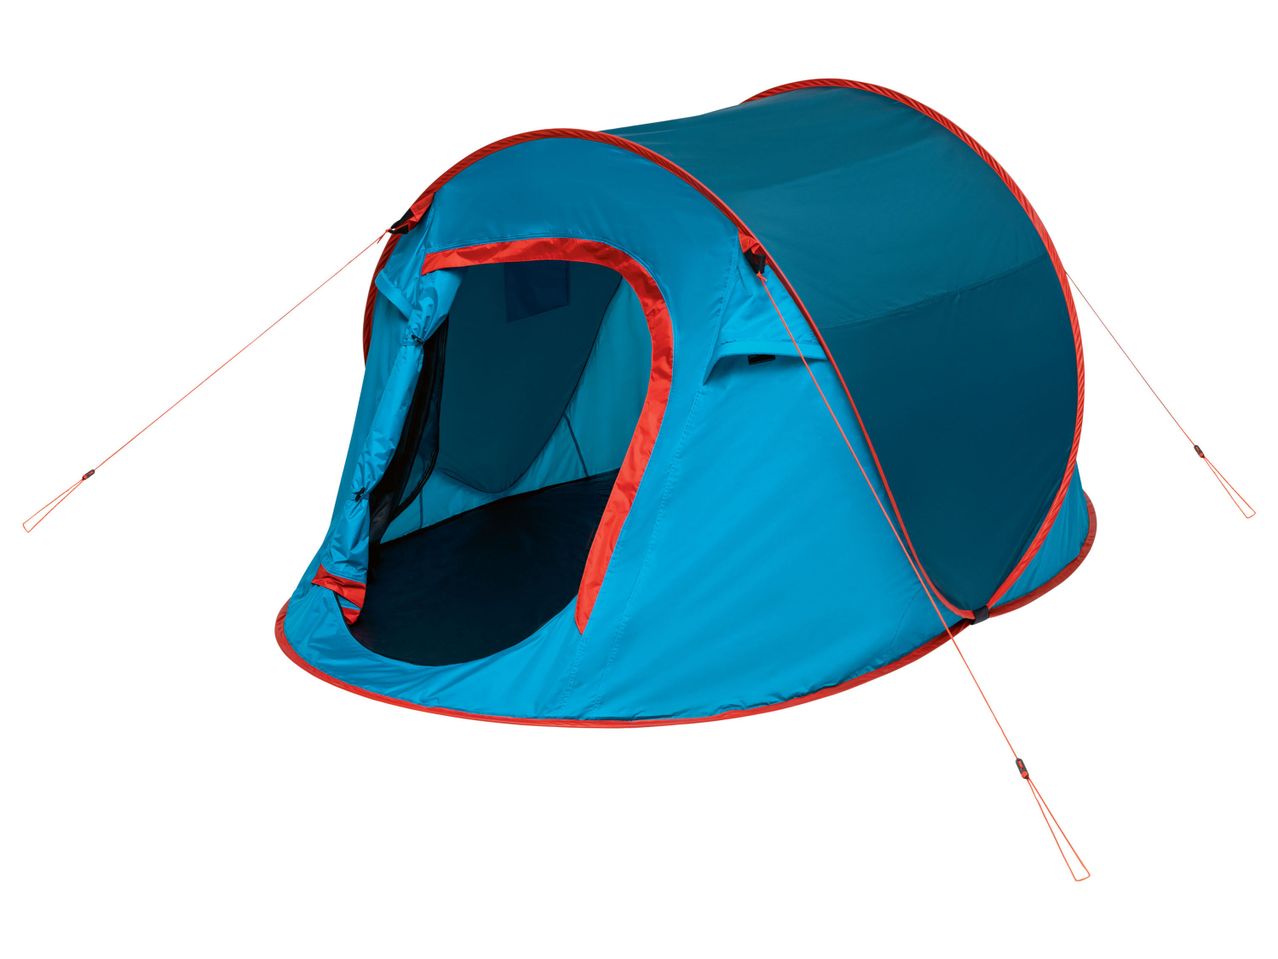 Tenda da campeggio Pop Up , prezzo 39.99 EUR 
Tenda da campeggio Pop Up Nuovo! 
- ...